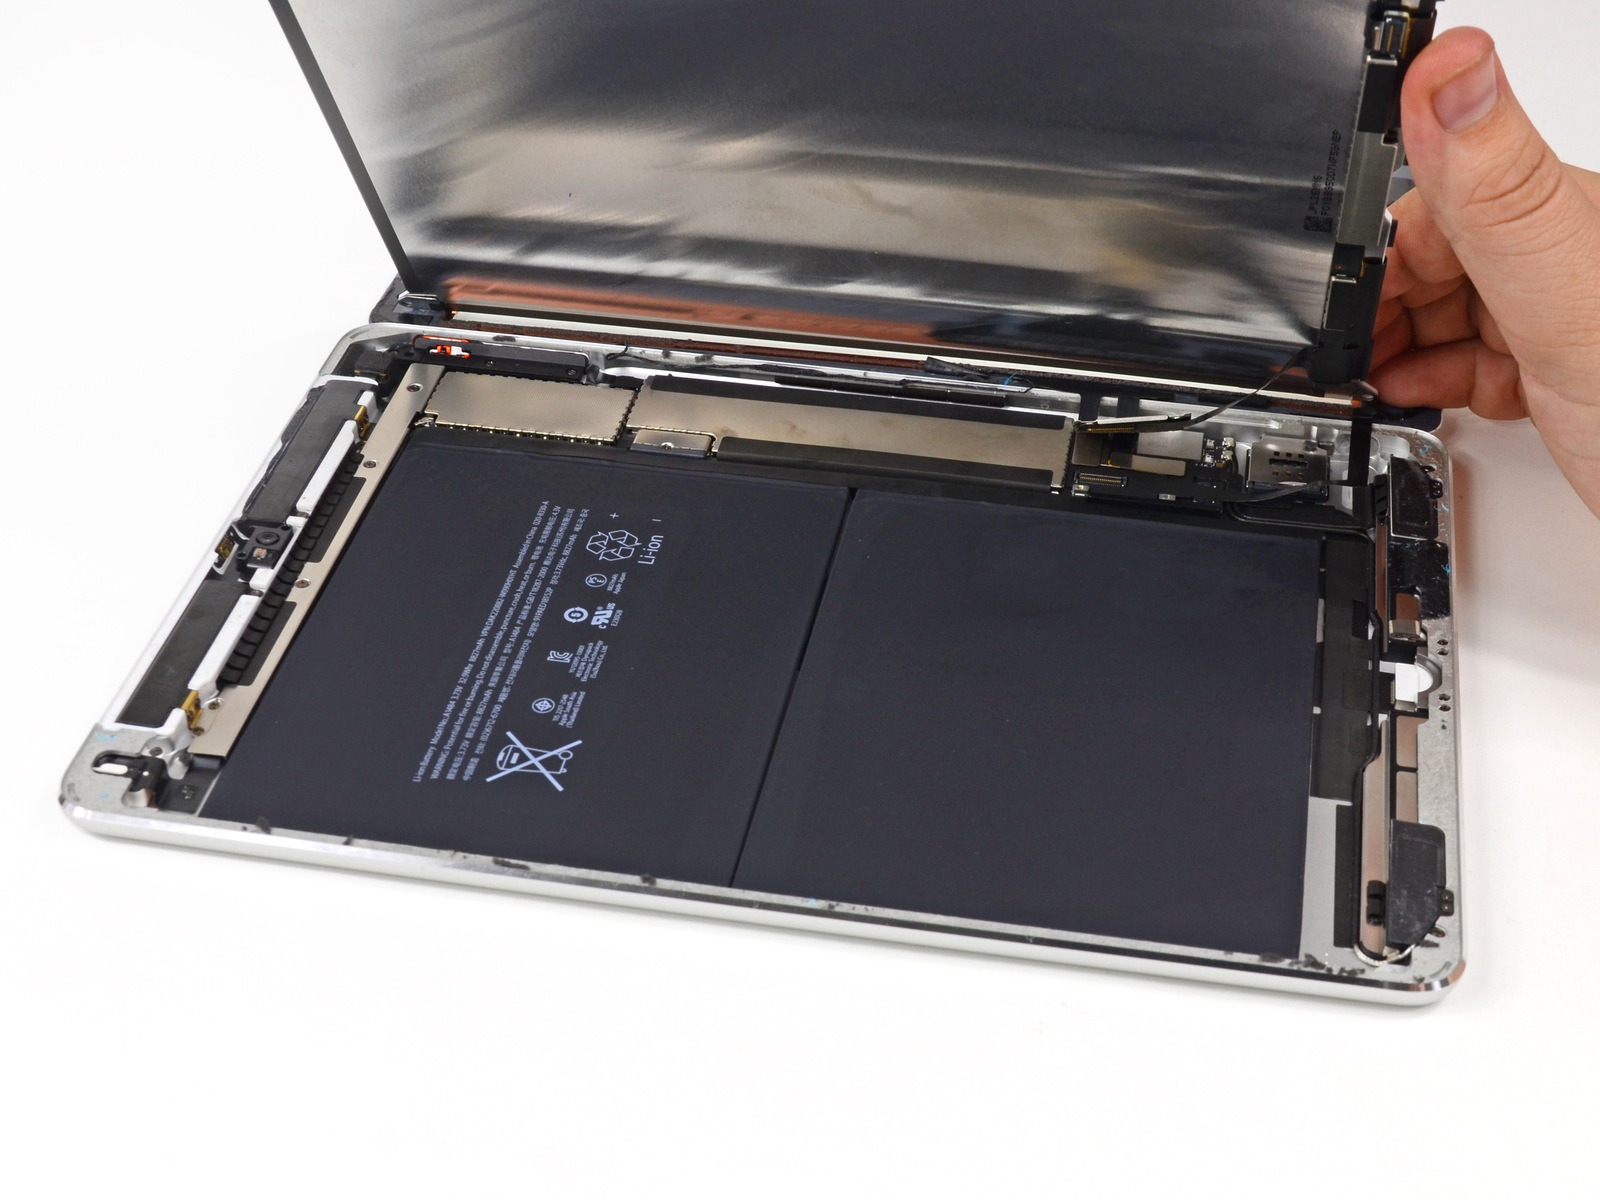 Desmontagem do iPad Air feita pela iFixit